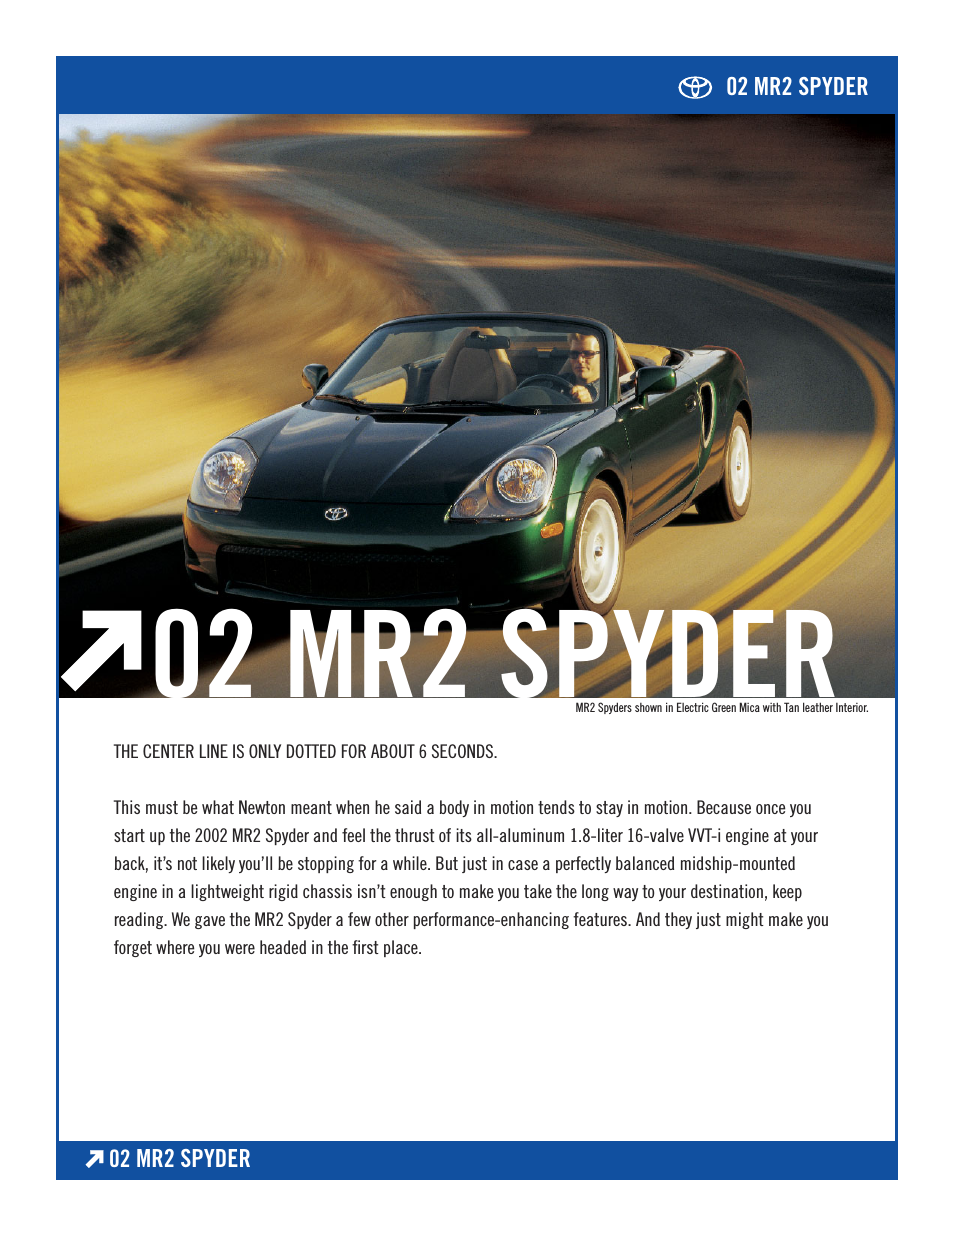 Spyder 02 MR2